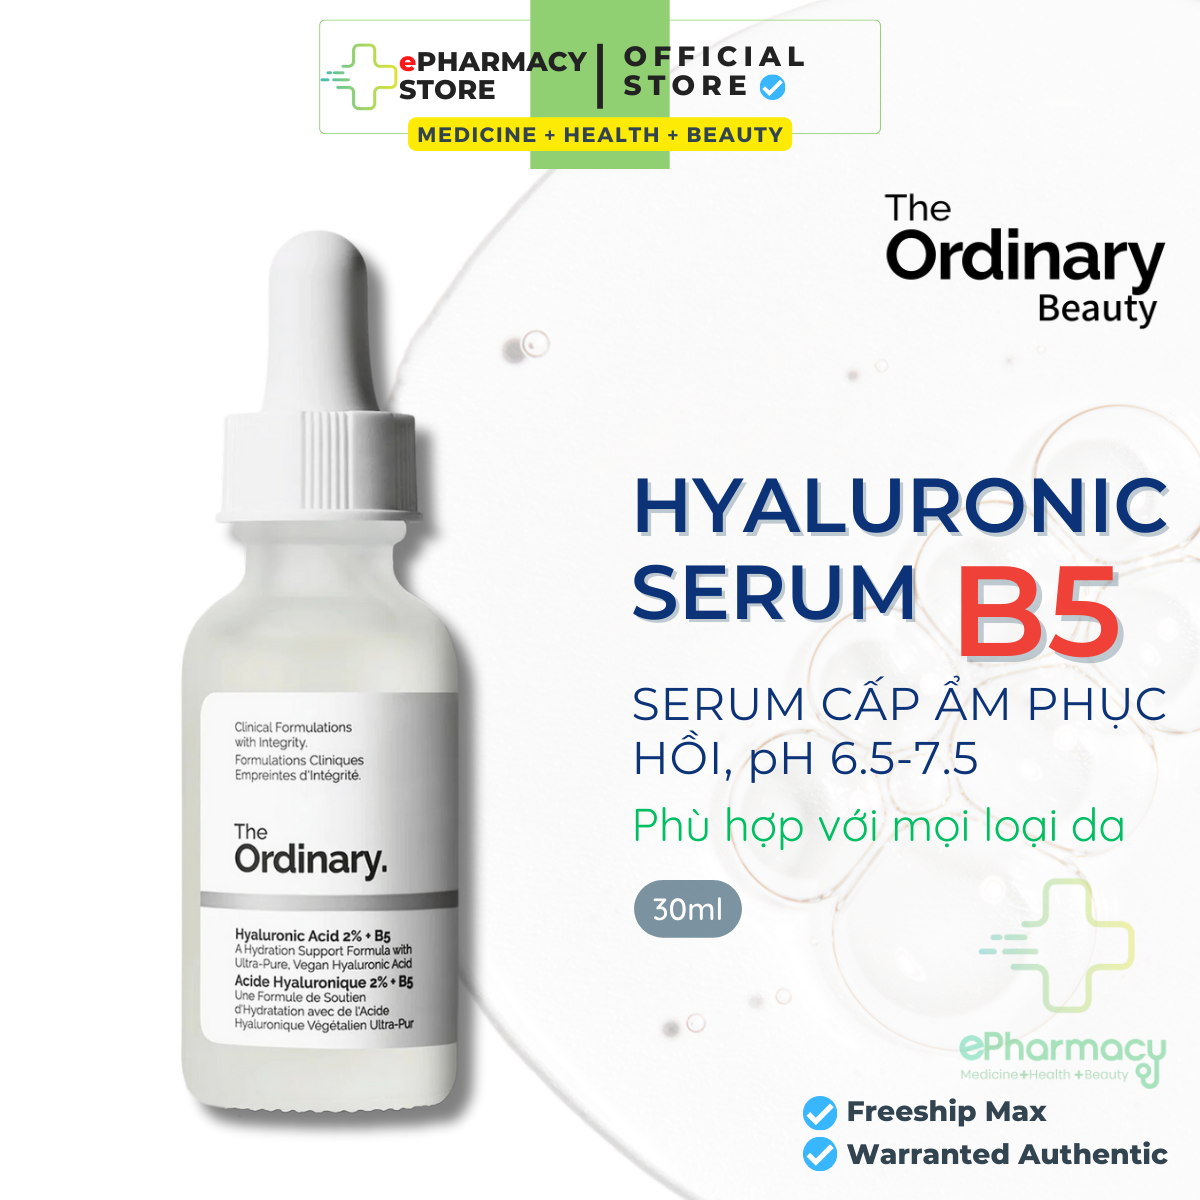 THE ORDINARY SERUM HYALURONIC ACID 2% + B5 - Tinh chất The Ordinary B5 cấp ẩm và phục hồi da 30ml